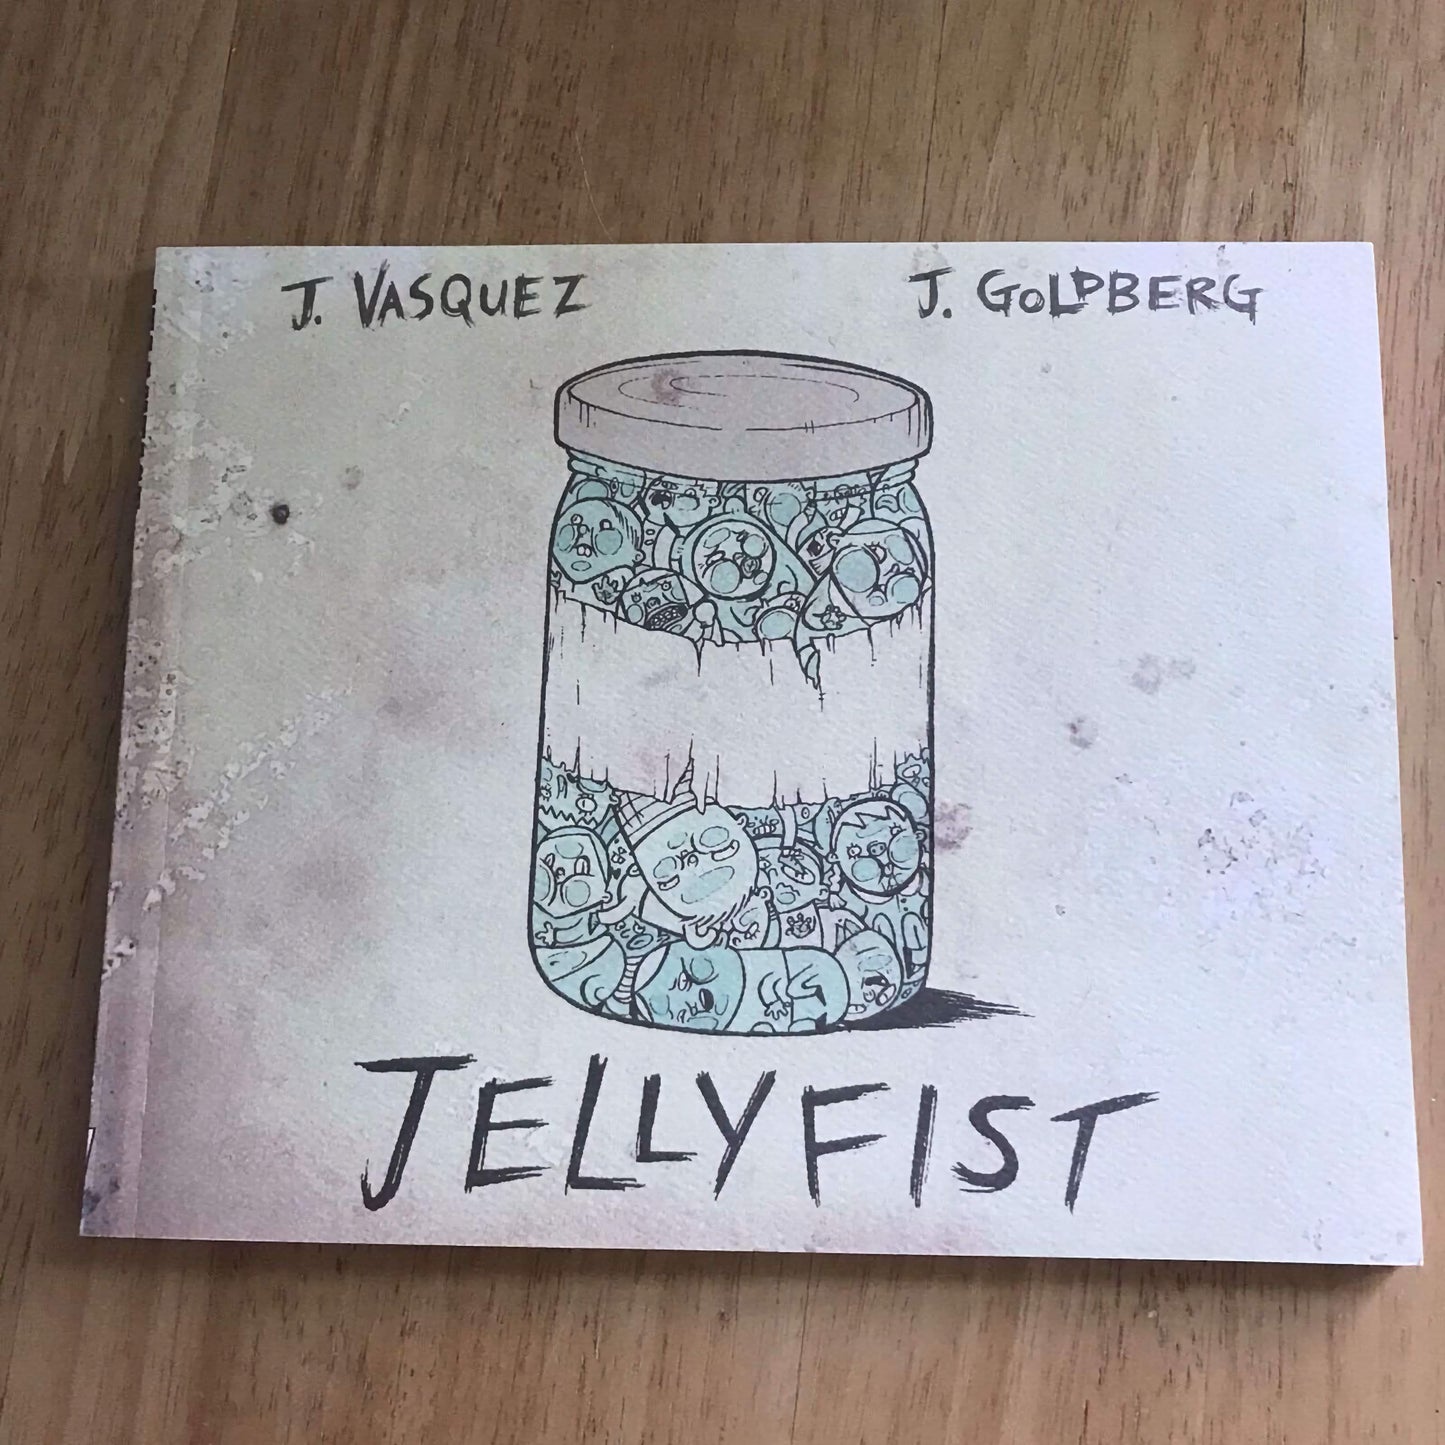 *1.* Jellyfist von Jhonen Vasquez &amp; Jenny Goldberg (Taschenbuch, 2007) SLG Publishin